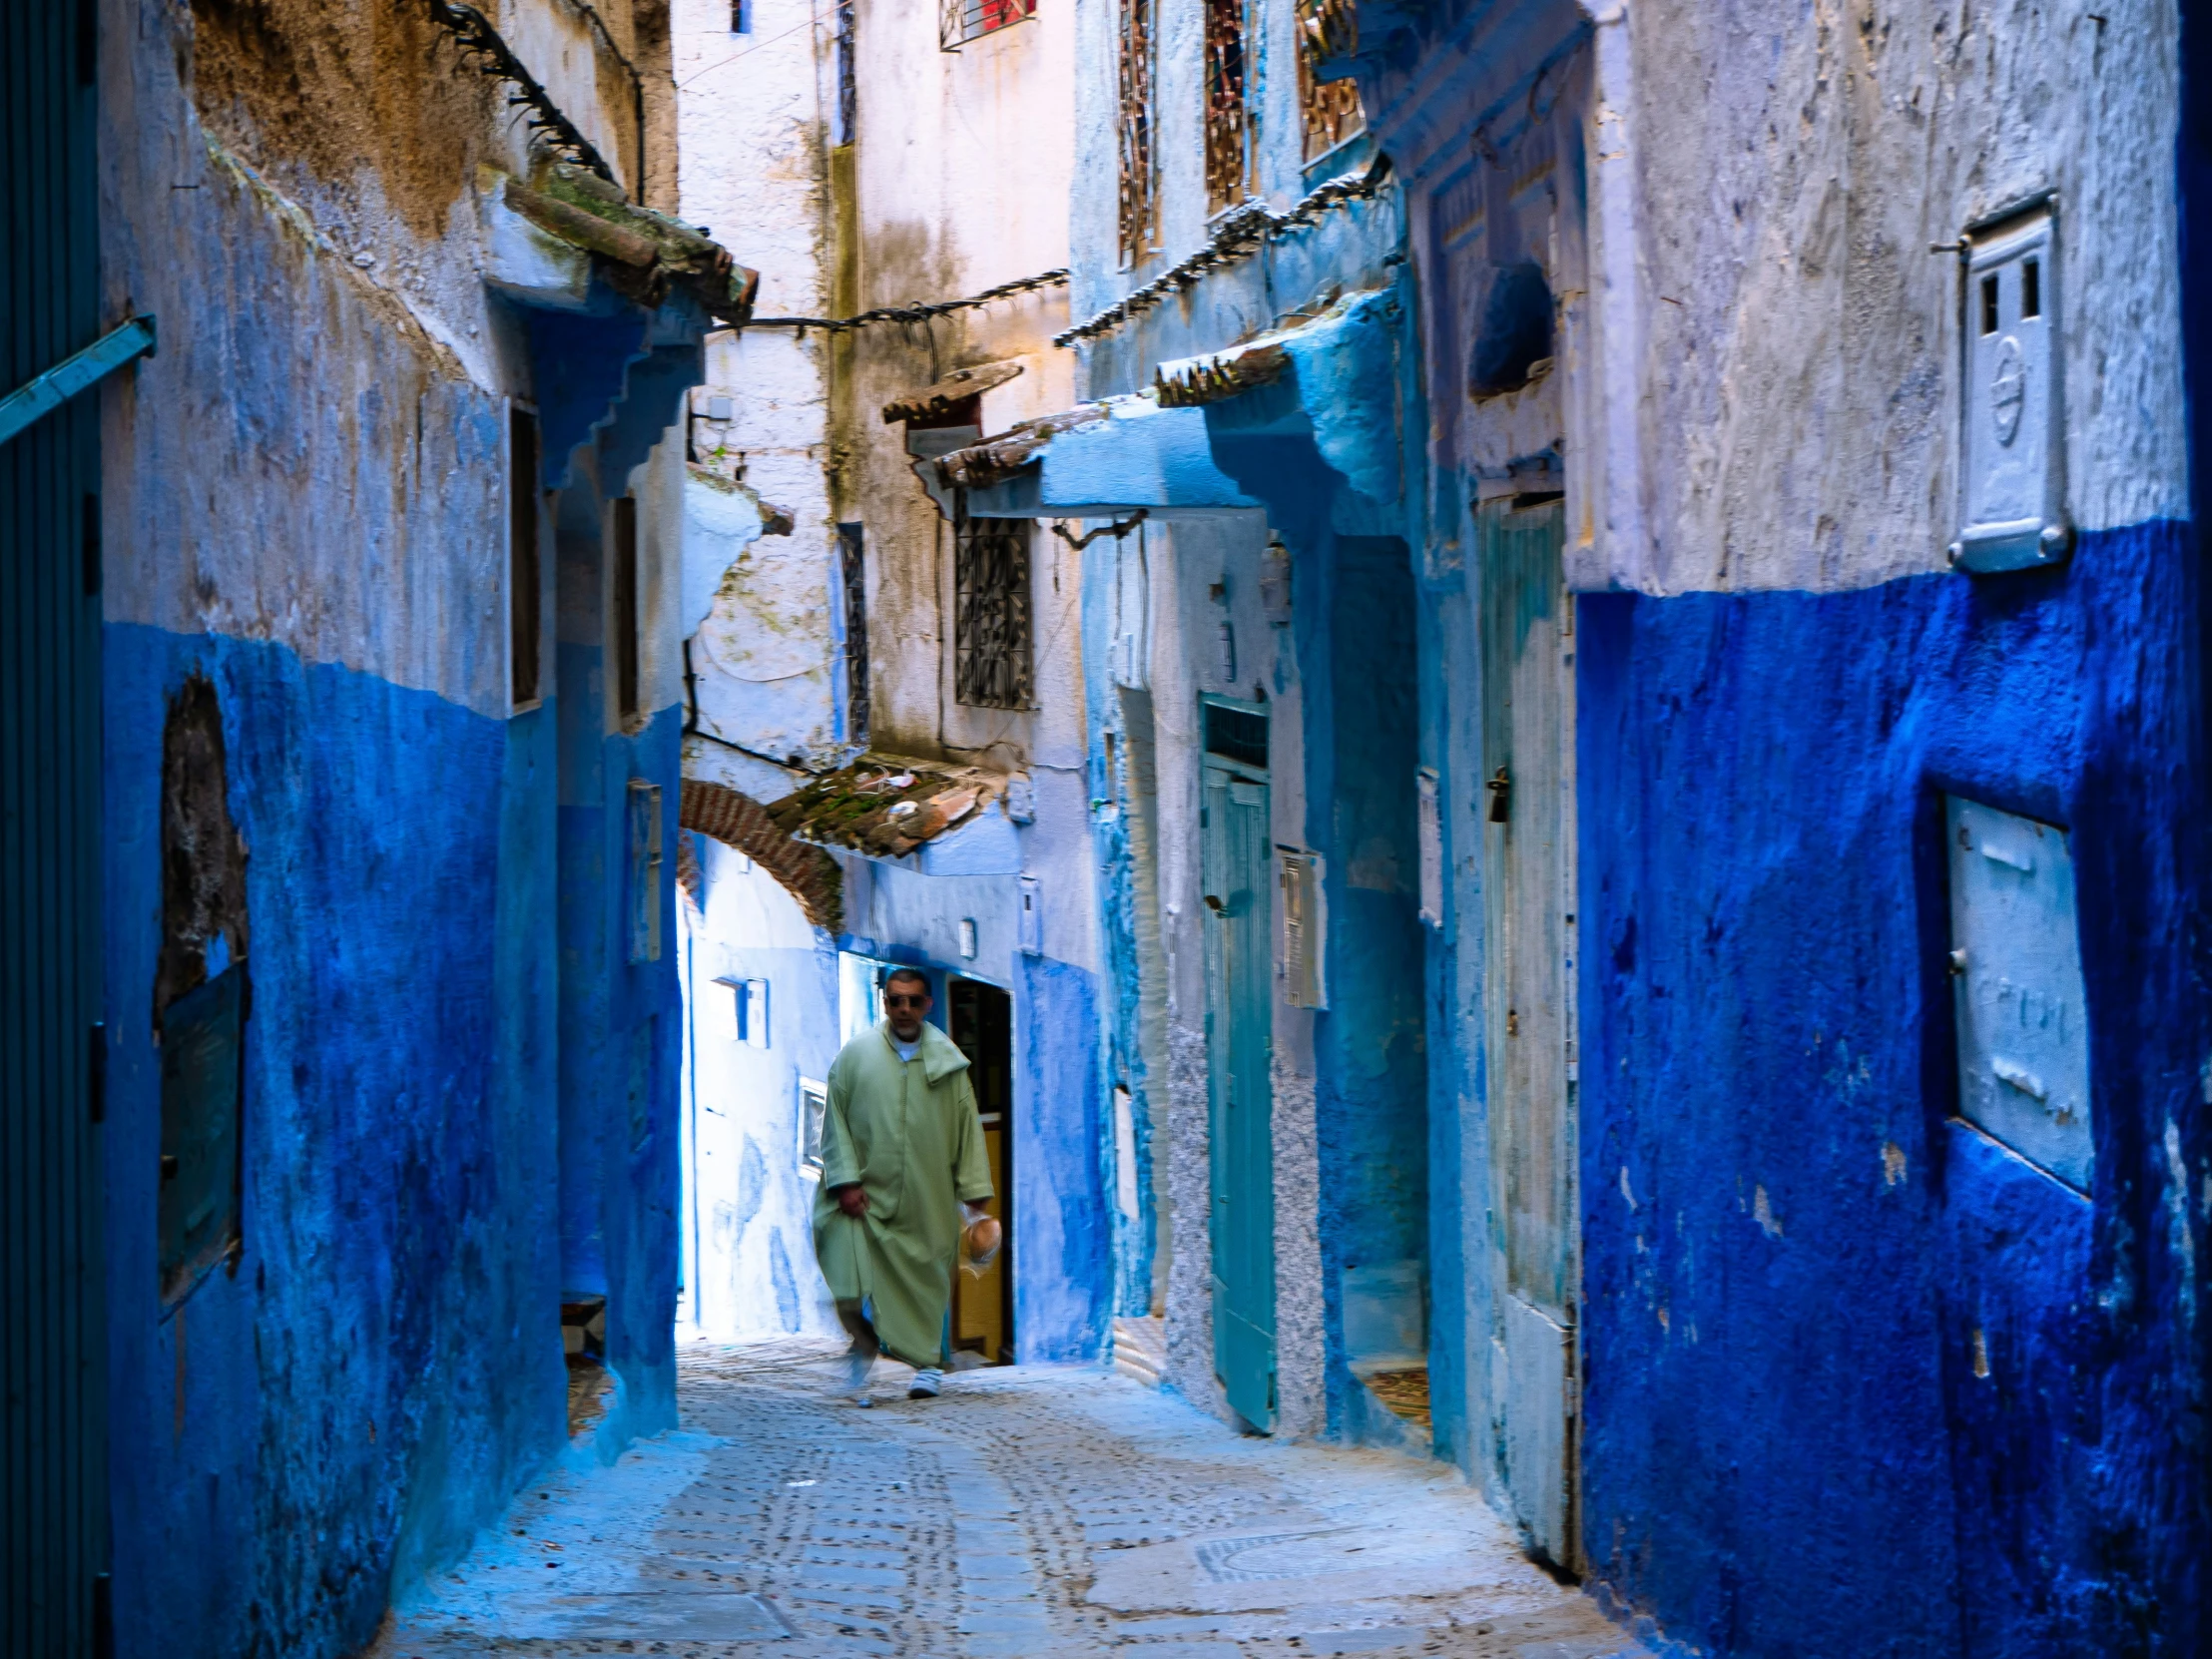 a man walking down a narrow alleyway between old buildings